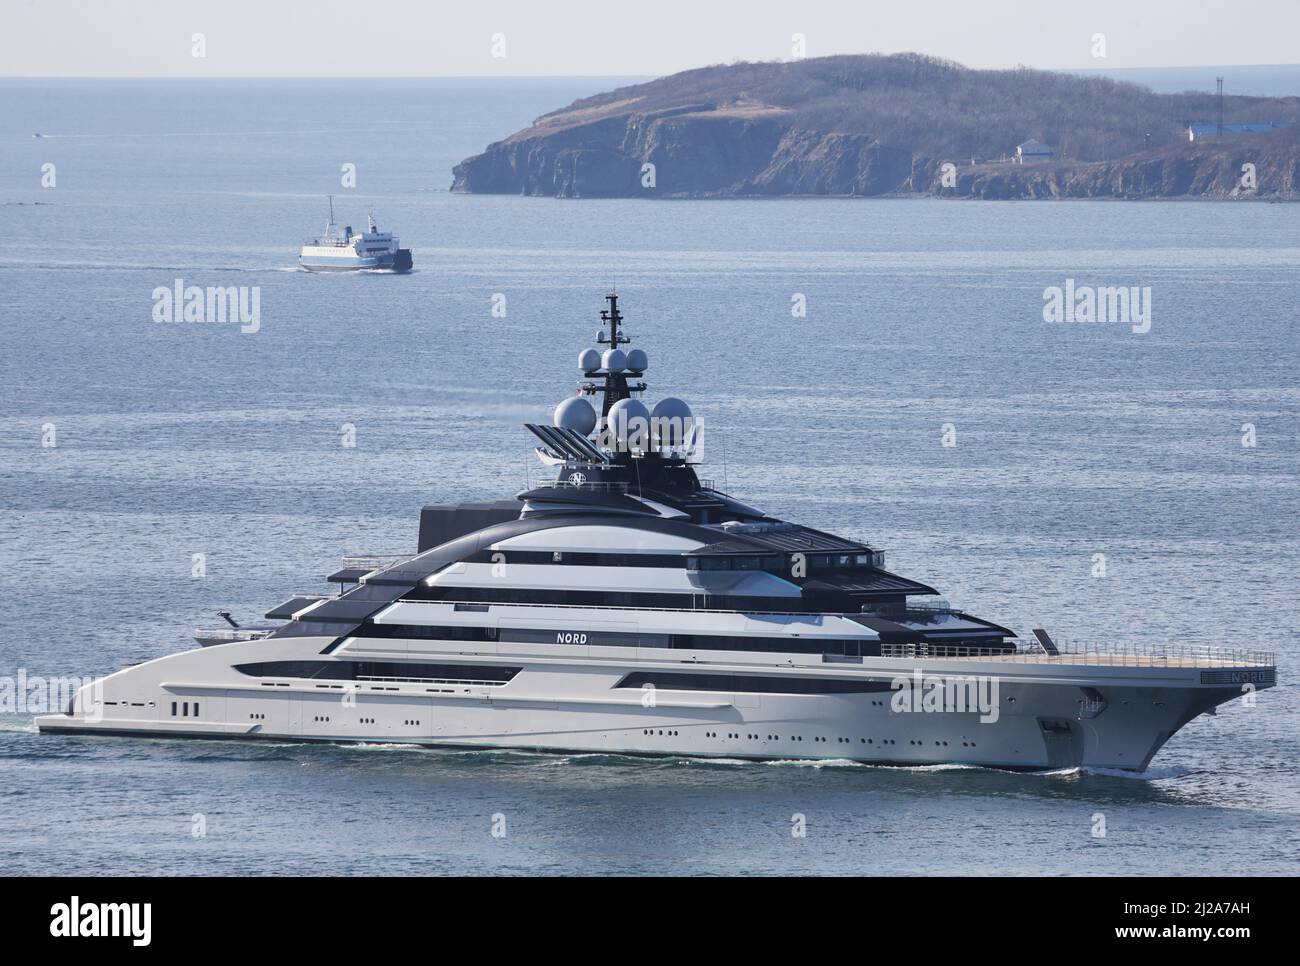 Le superyacht Nord, qui serait détenu par l'oligarque russe sanctionné Alexei Mordashov, arrive dans le port extrême-Orient de Vladivostok, Russie le 31 mars 2022. PHOTOGRAPHE REUTERS/REUTERS Banque D'Images